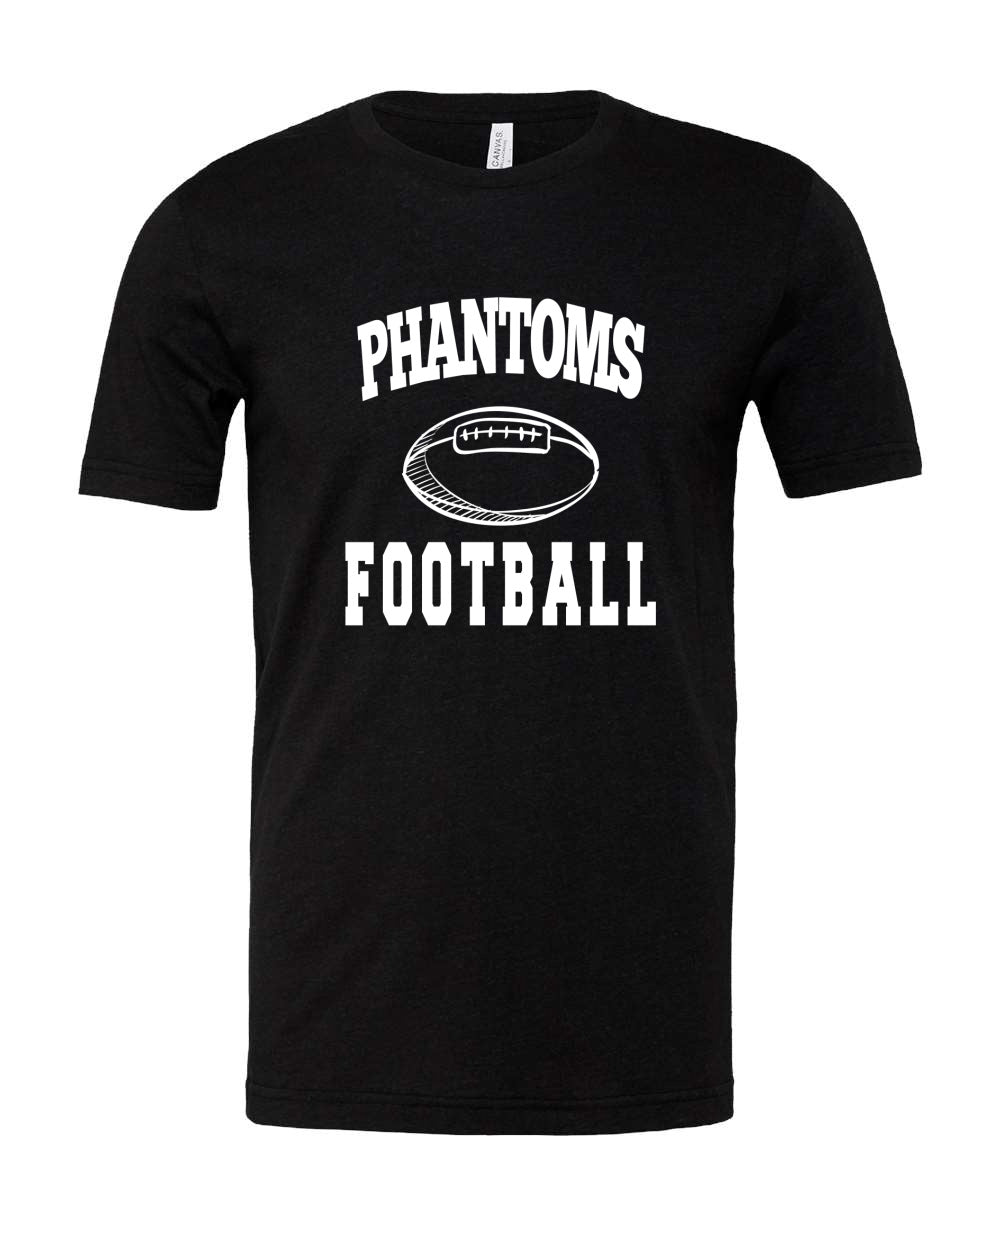 West De Pere Phantoms Merch - Tees, Long Sleeve Tee, Crewneck or Hoodie - Block Phantoms Football